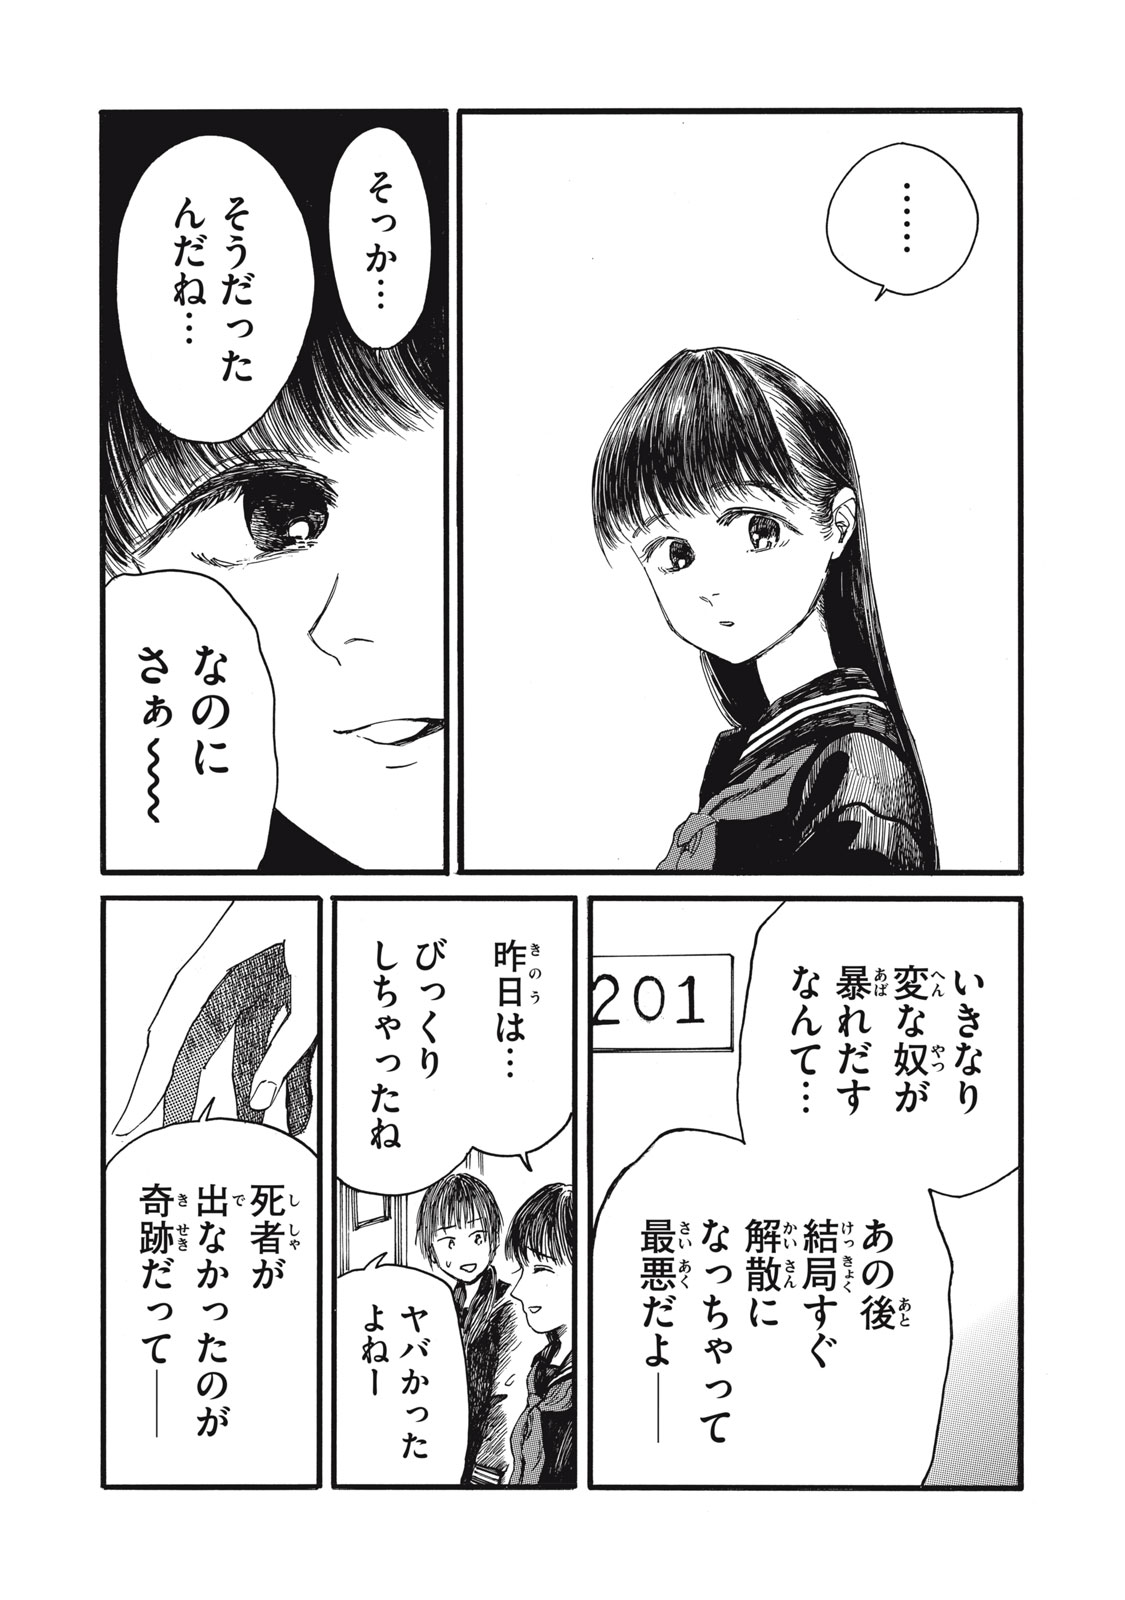 Watashi no Hara no Naka no Bakemono - Chapter 34 - Page 9